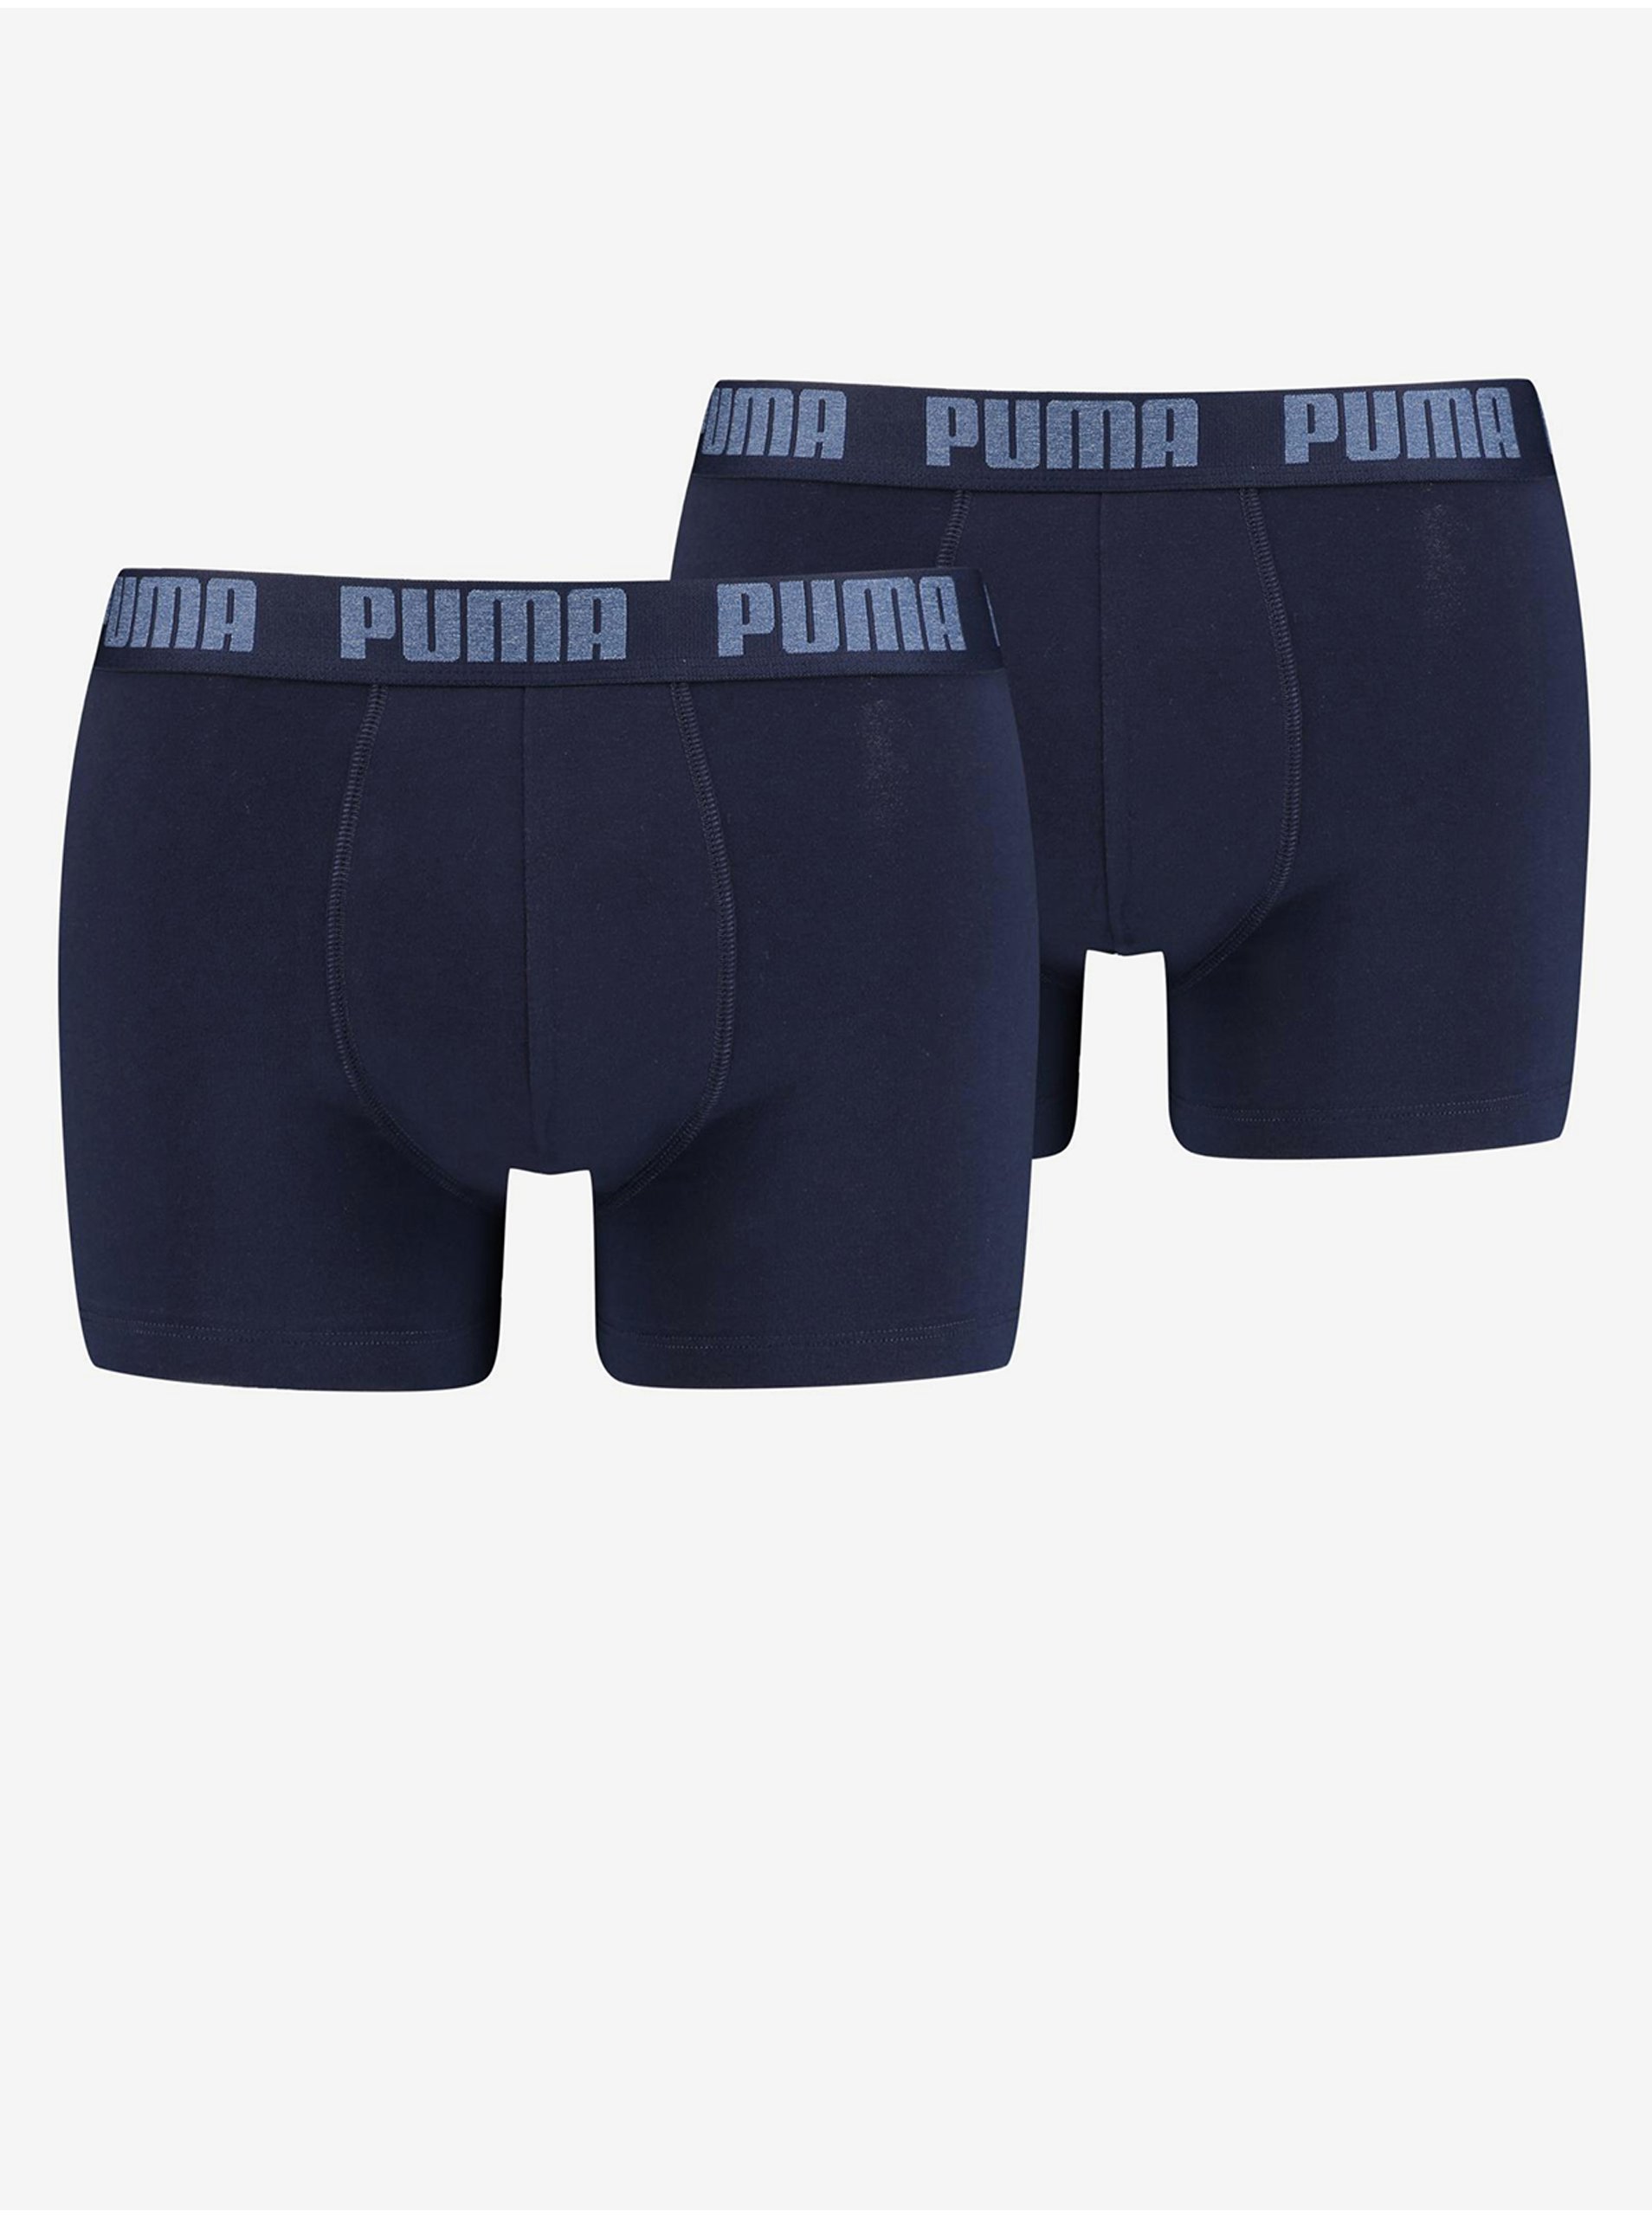 E-shop Sada dvoch pánskych boxerok v tmavomodrej farbe Puma